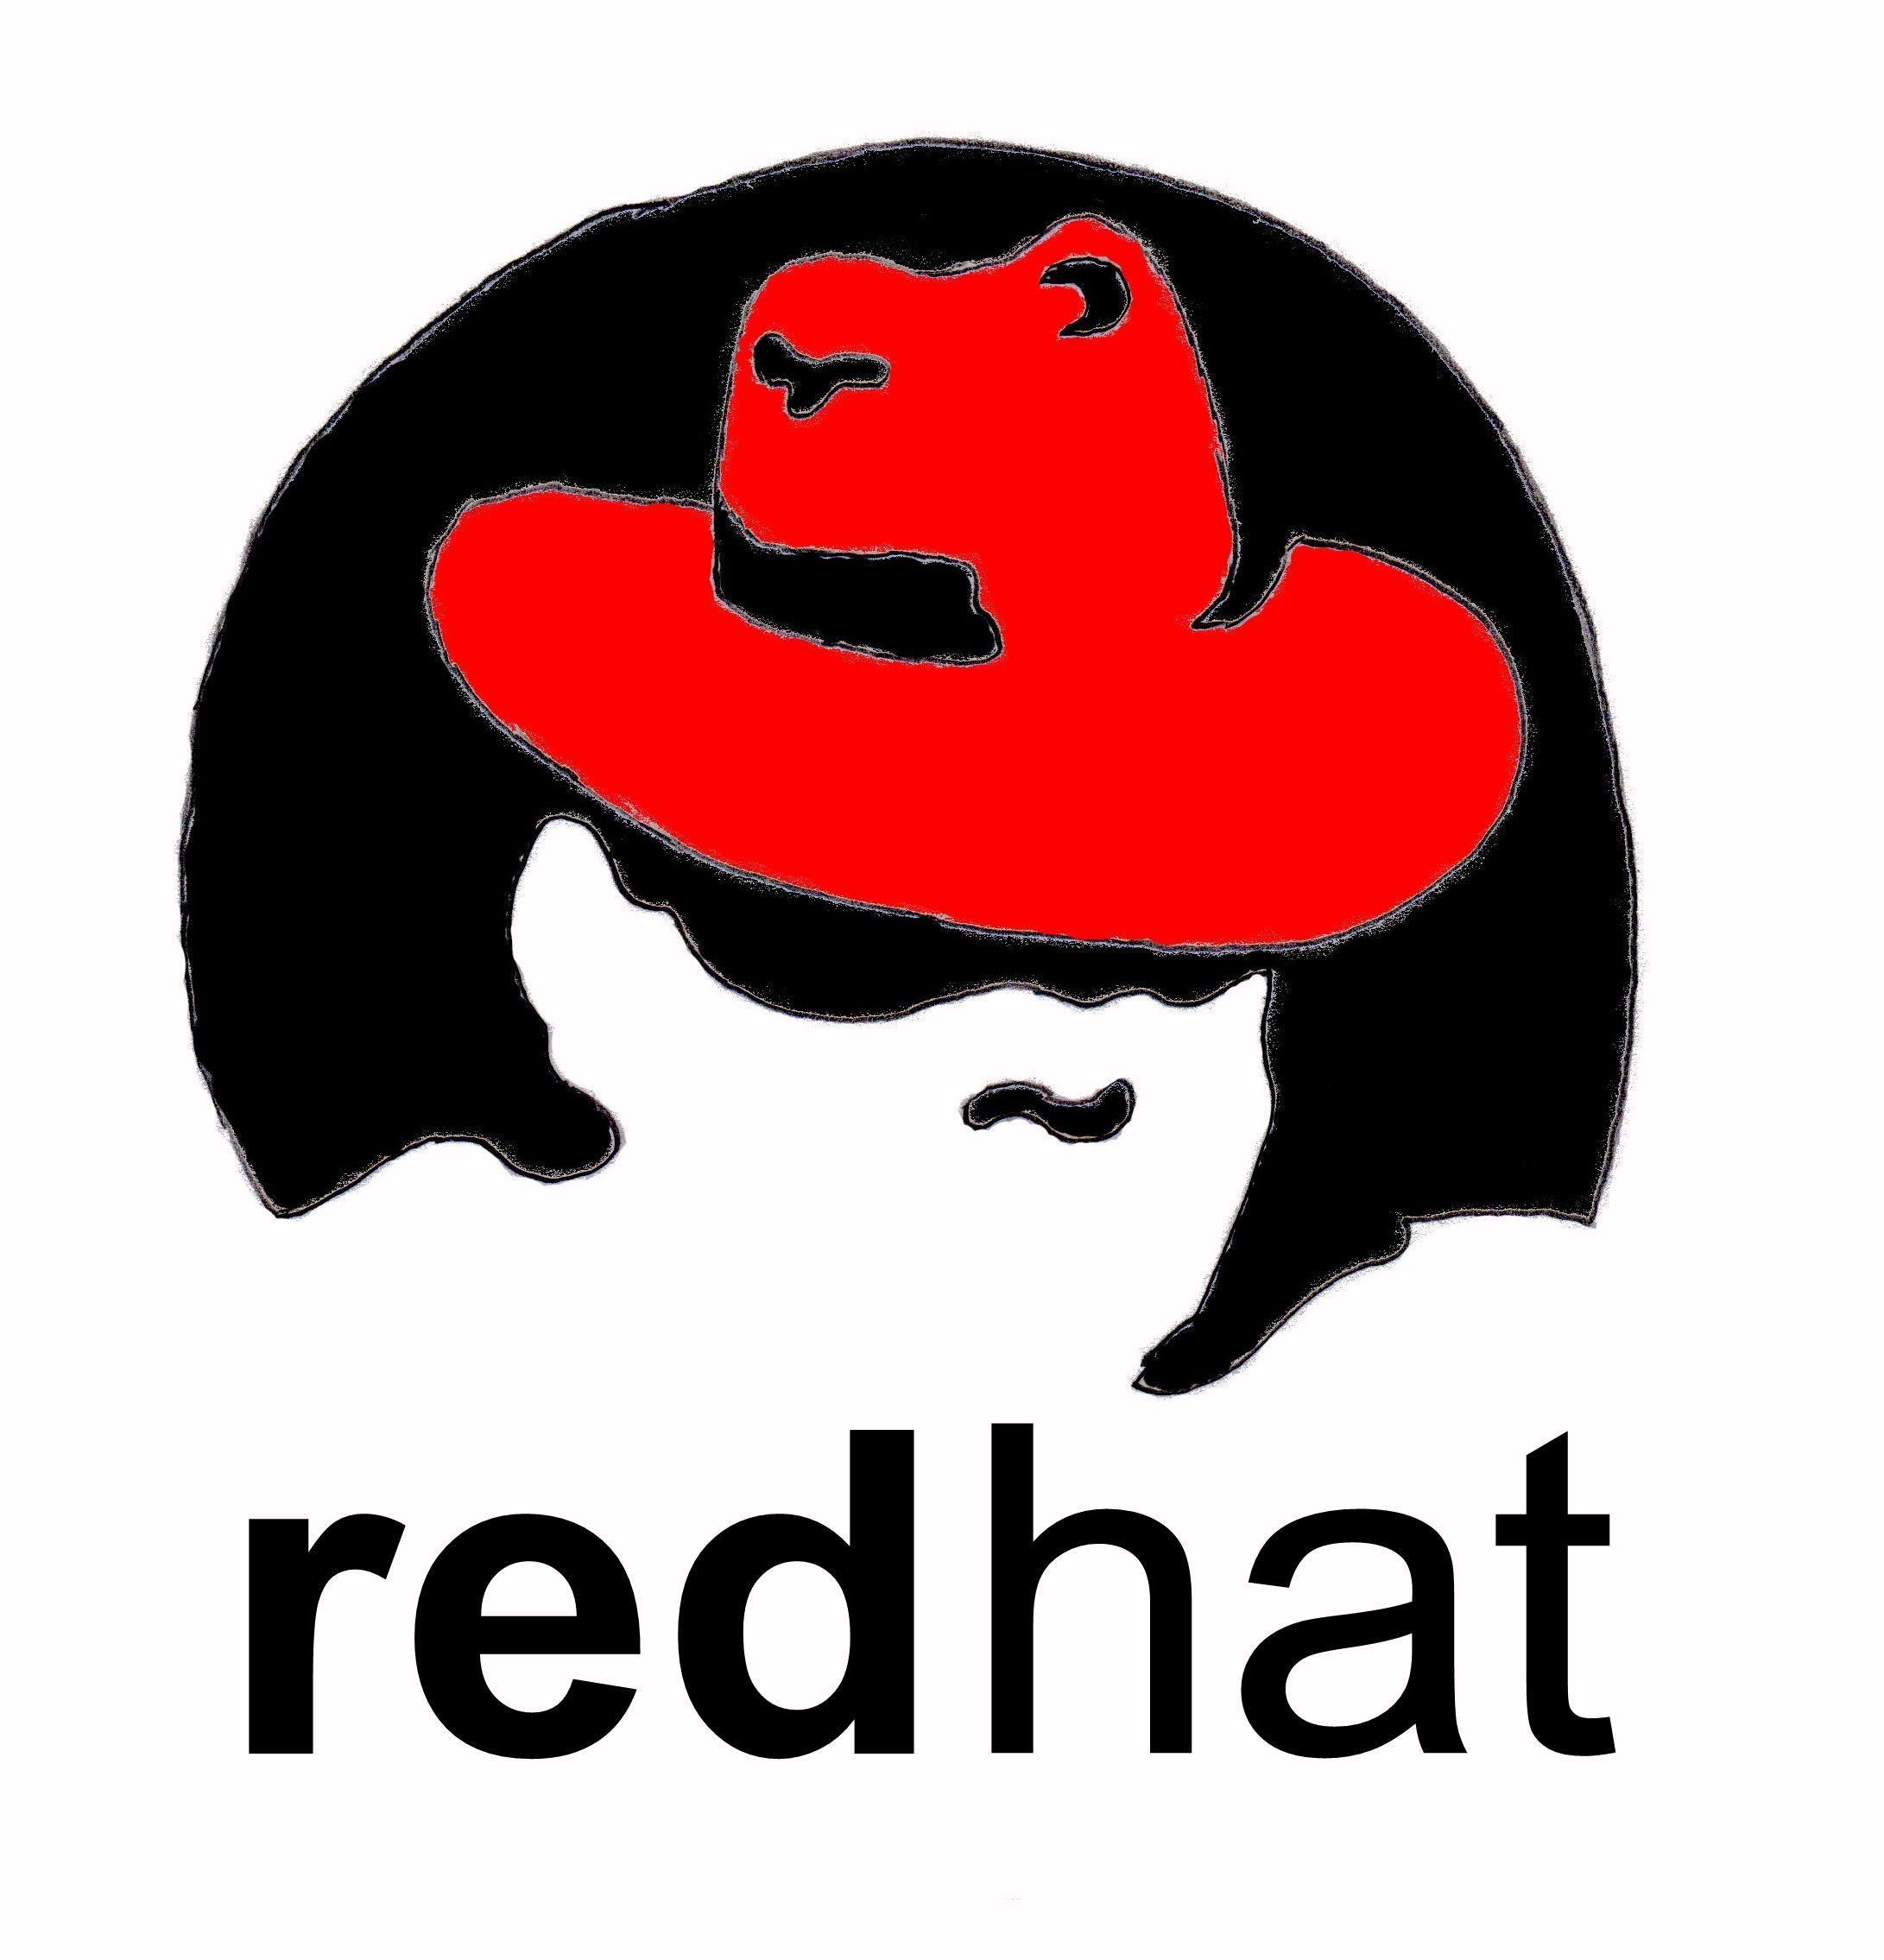 RHEL Logo - Linux red hat Logos